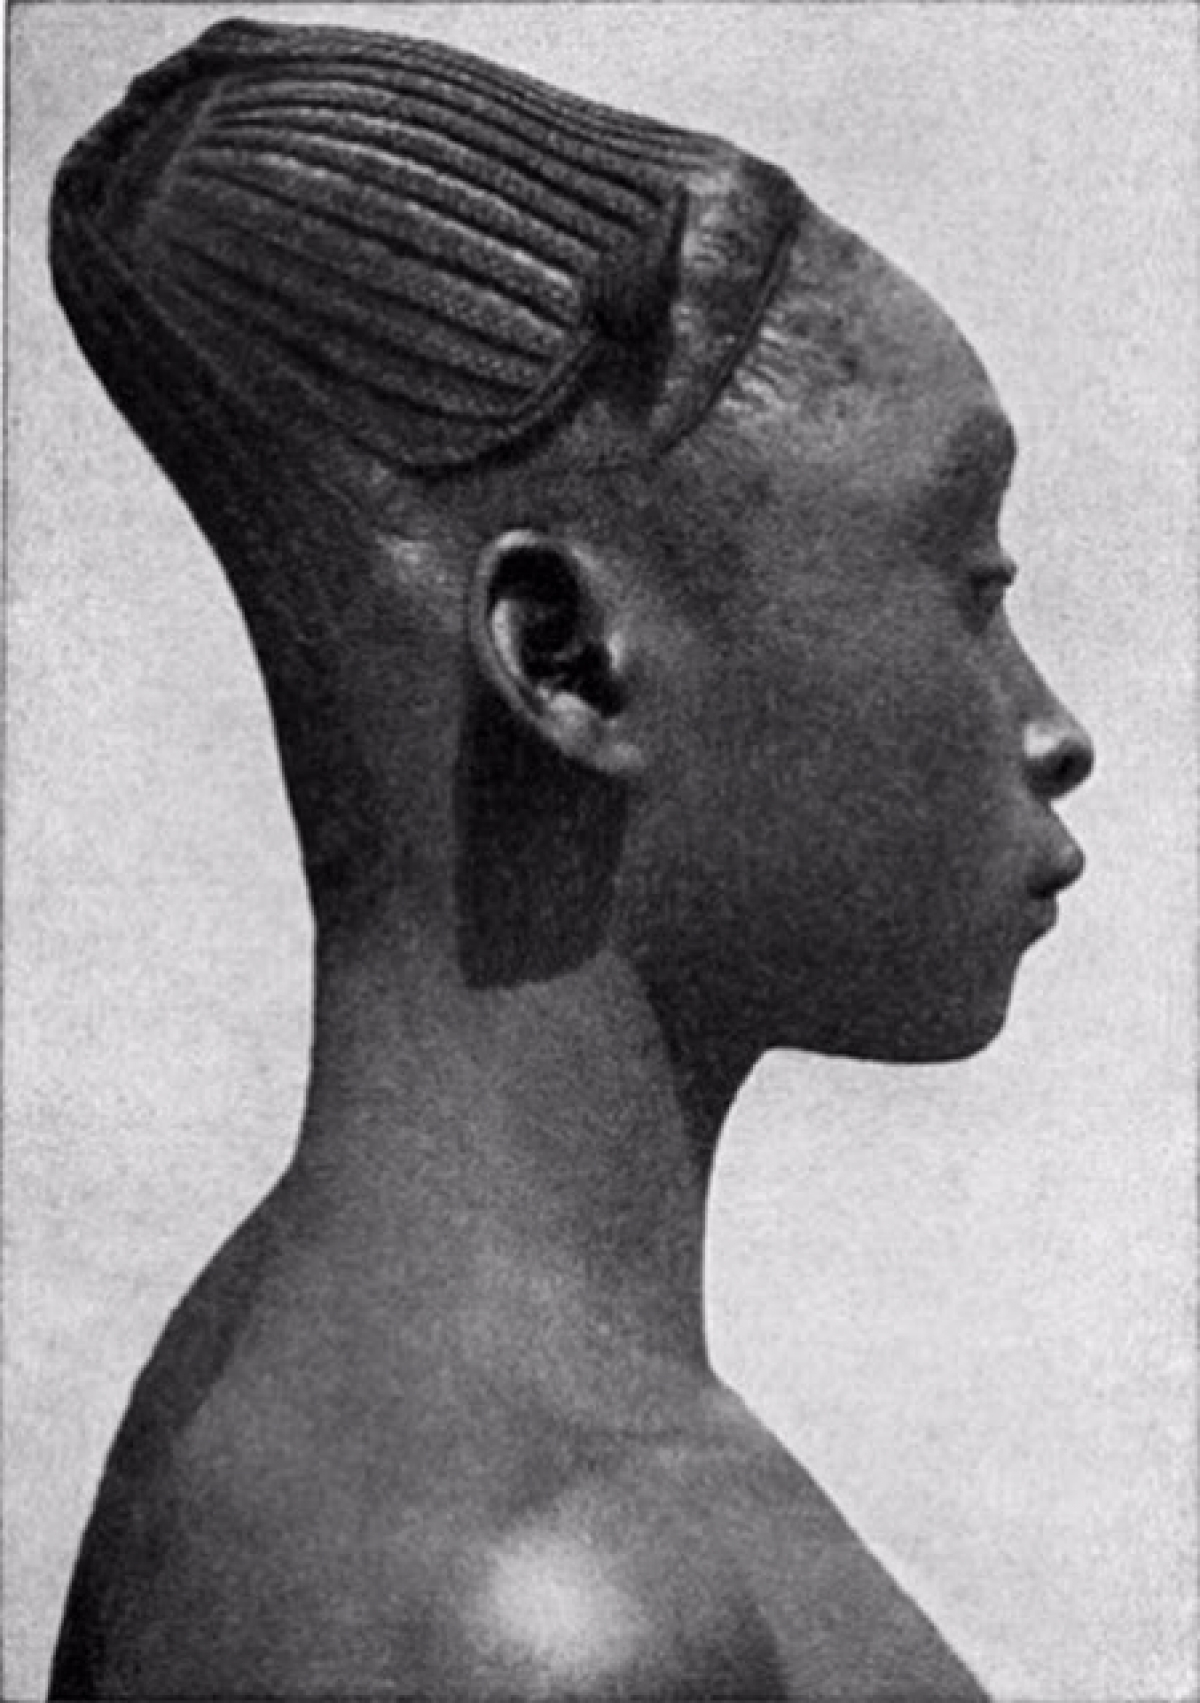 Форма затылка. Мангбету деформация черепа. Тулузская деформация черепа. Африканское племя мангбету.